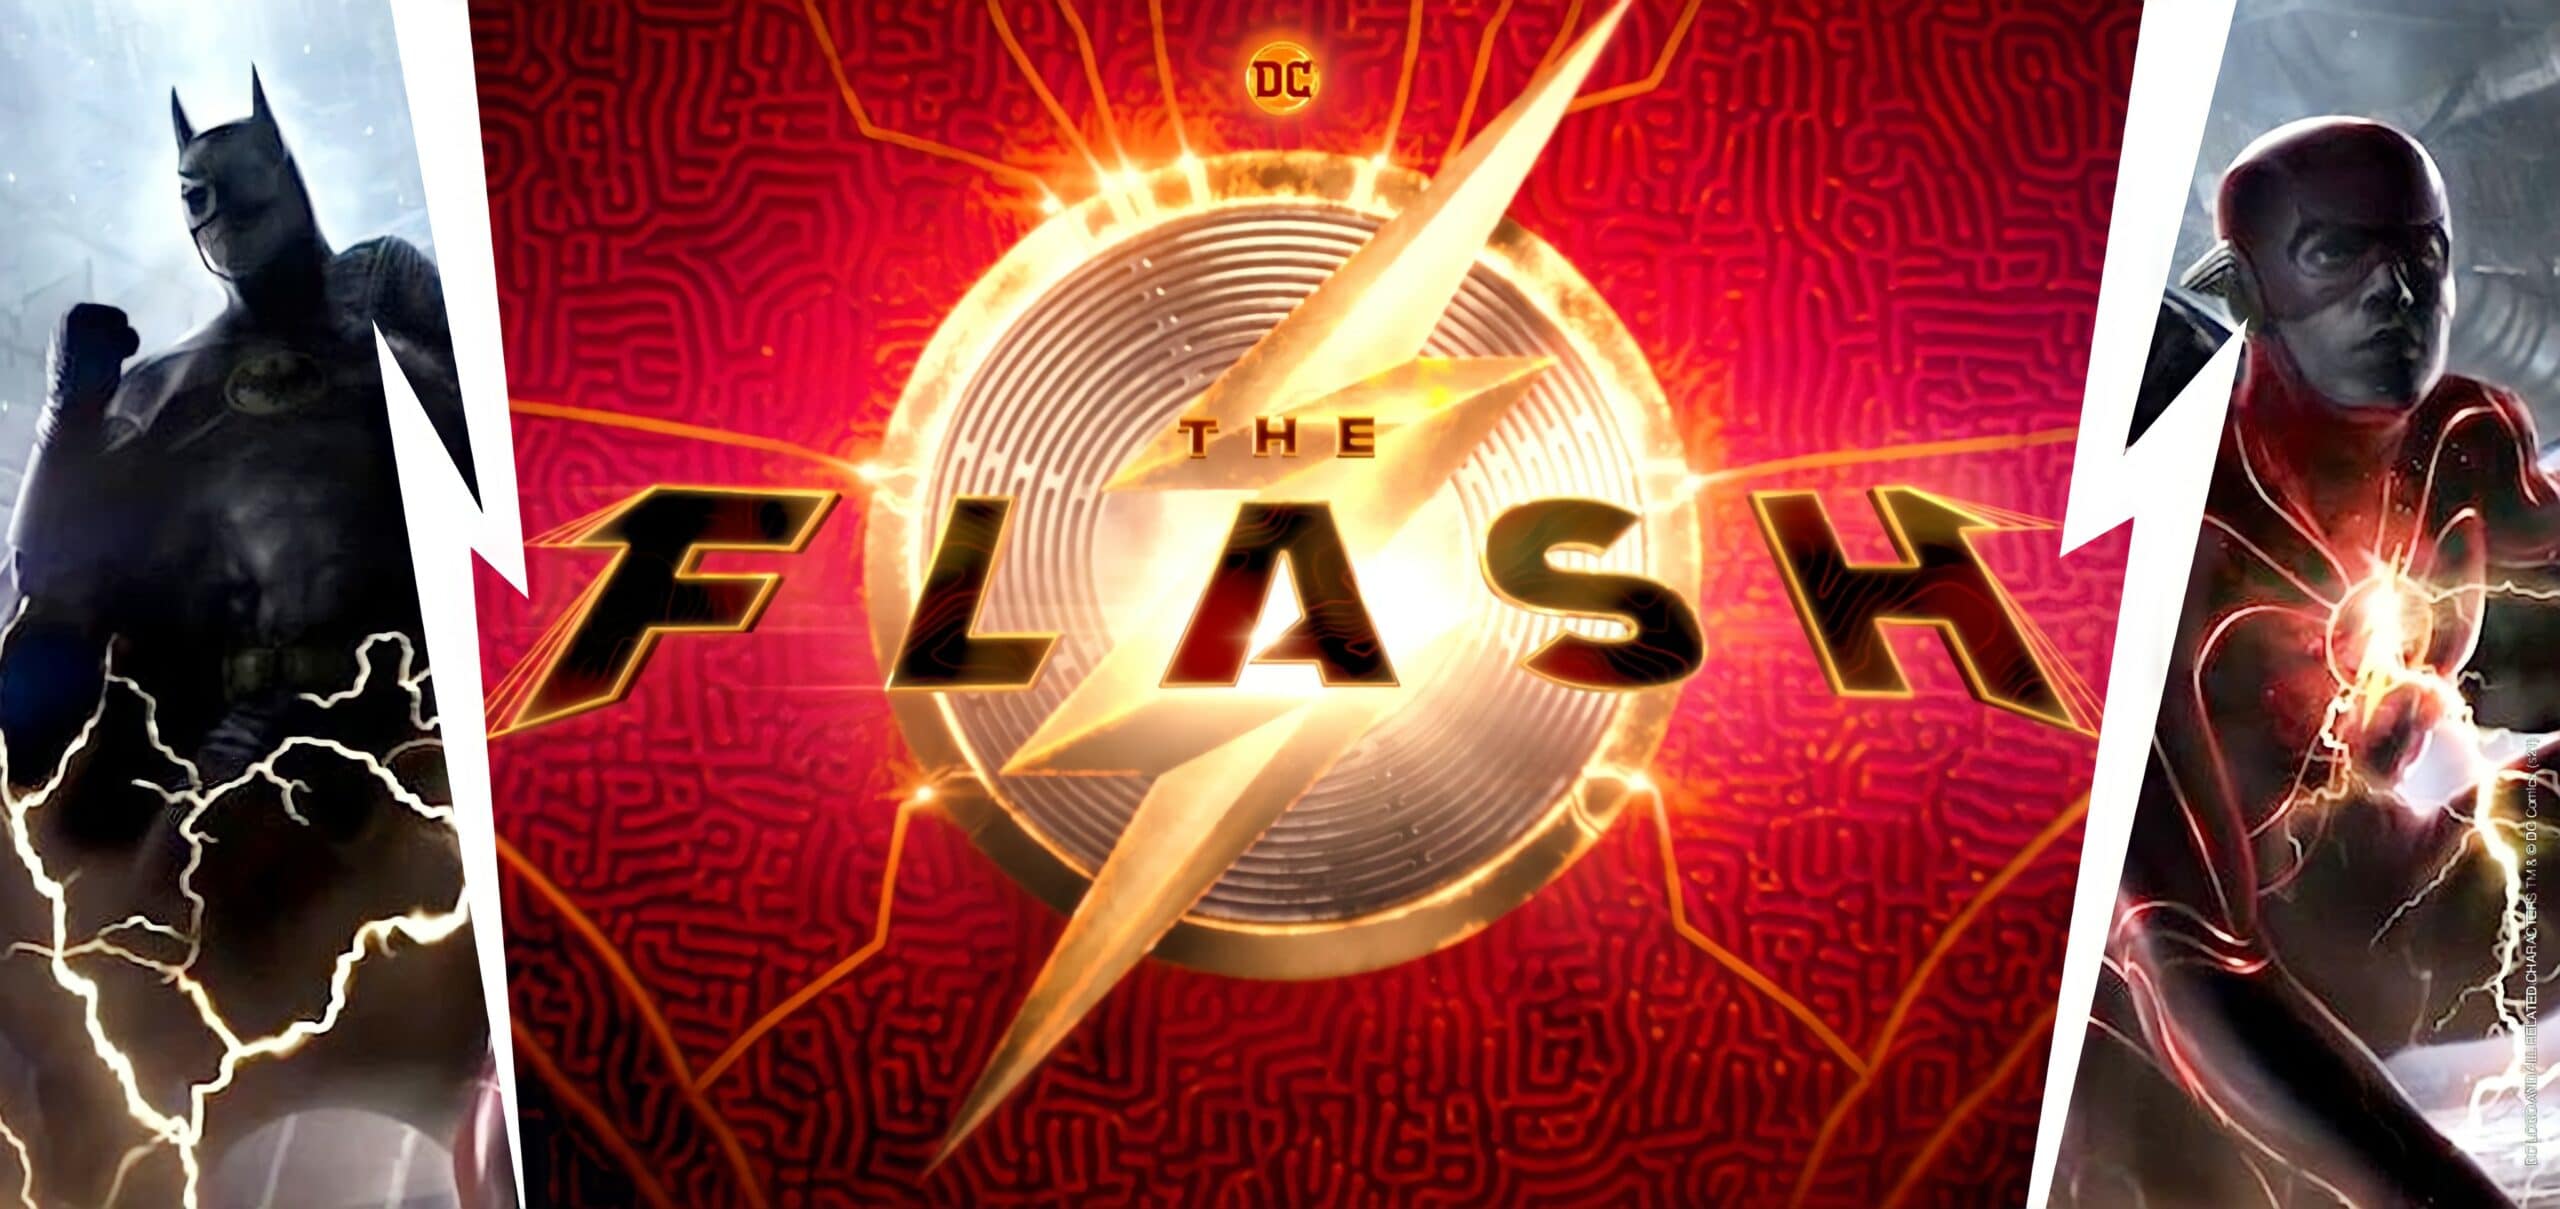 The Flash | Tudo que você precisa saber sobre o 1º filme solo do personagem de Ezra Miller no DCEU